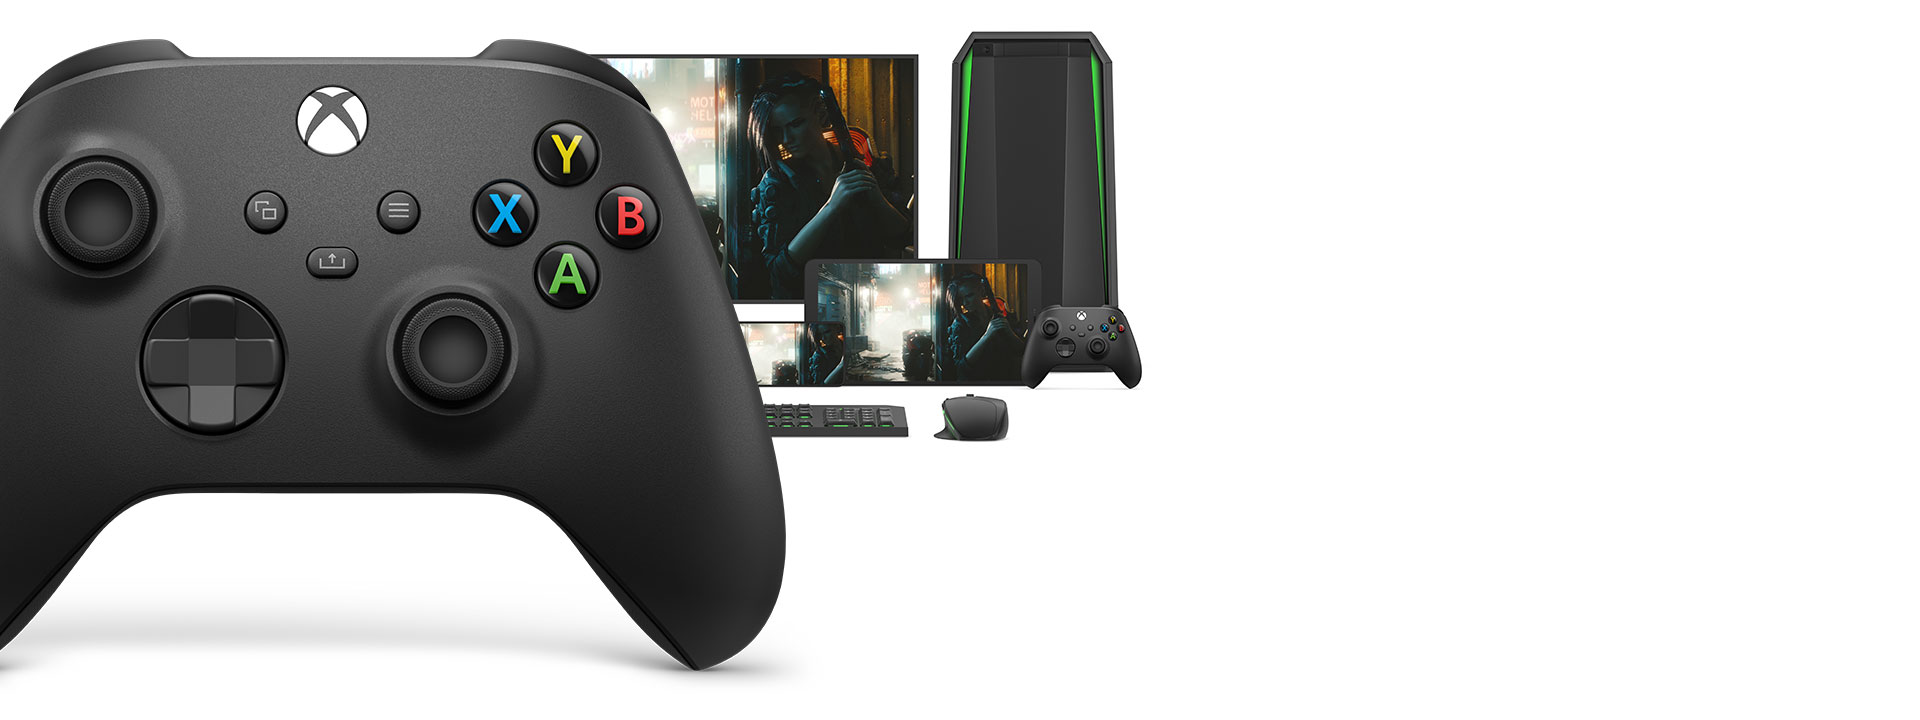 Xbox trådlös handkontroll framför en dator, bildskärm, surfplatta, xbox trådlös handkontroll och en mus och ett tangentbord